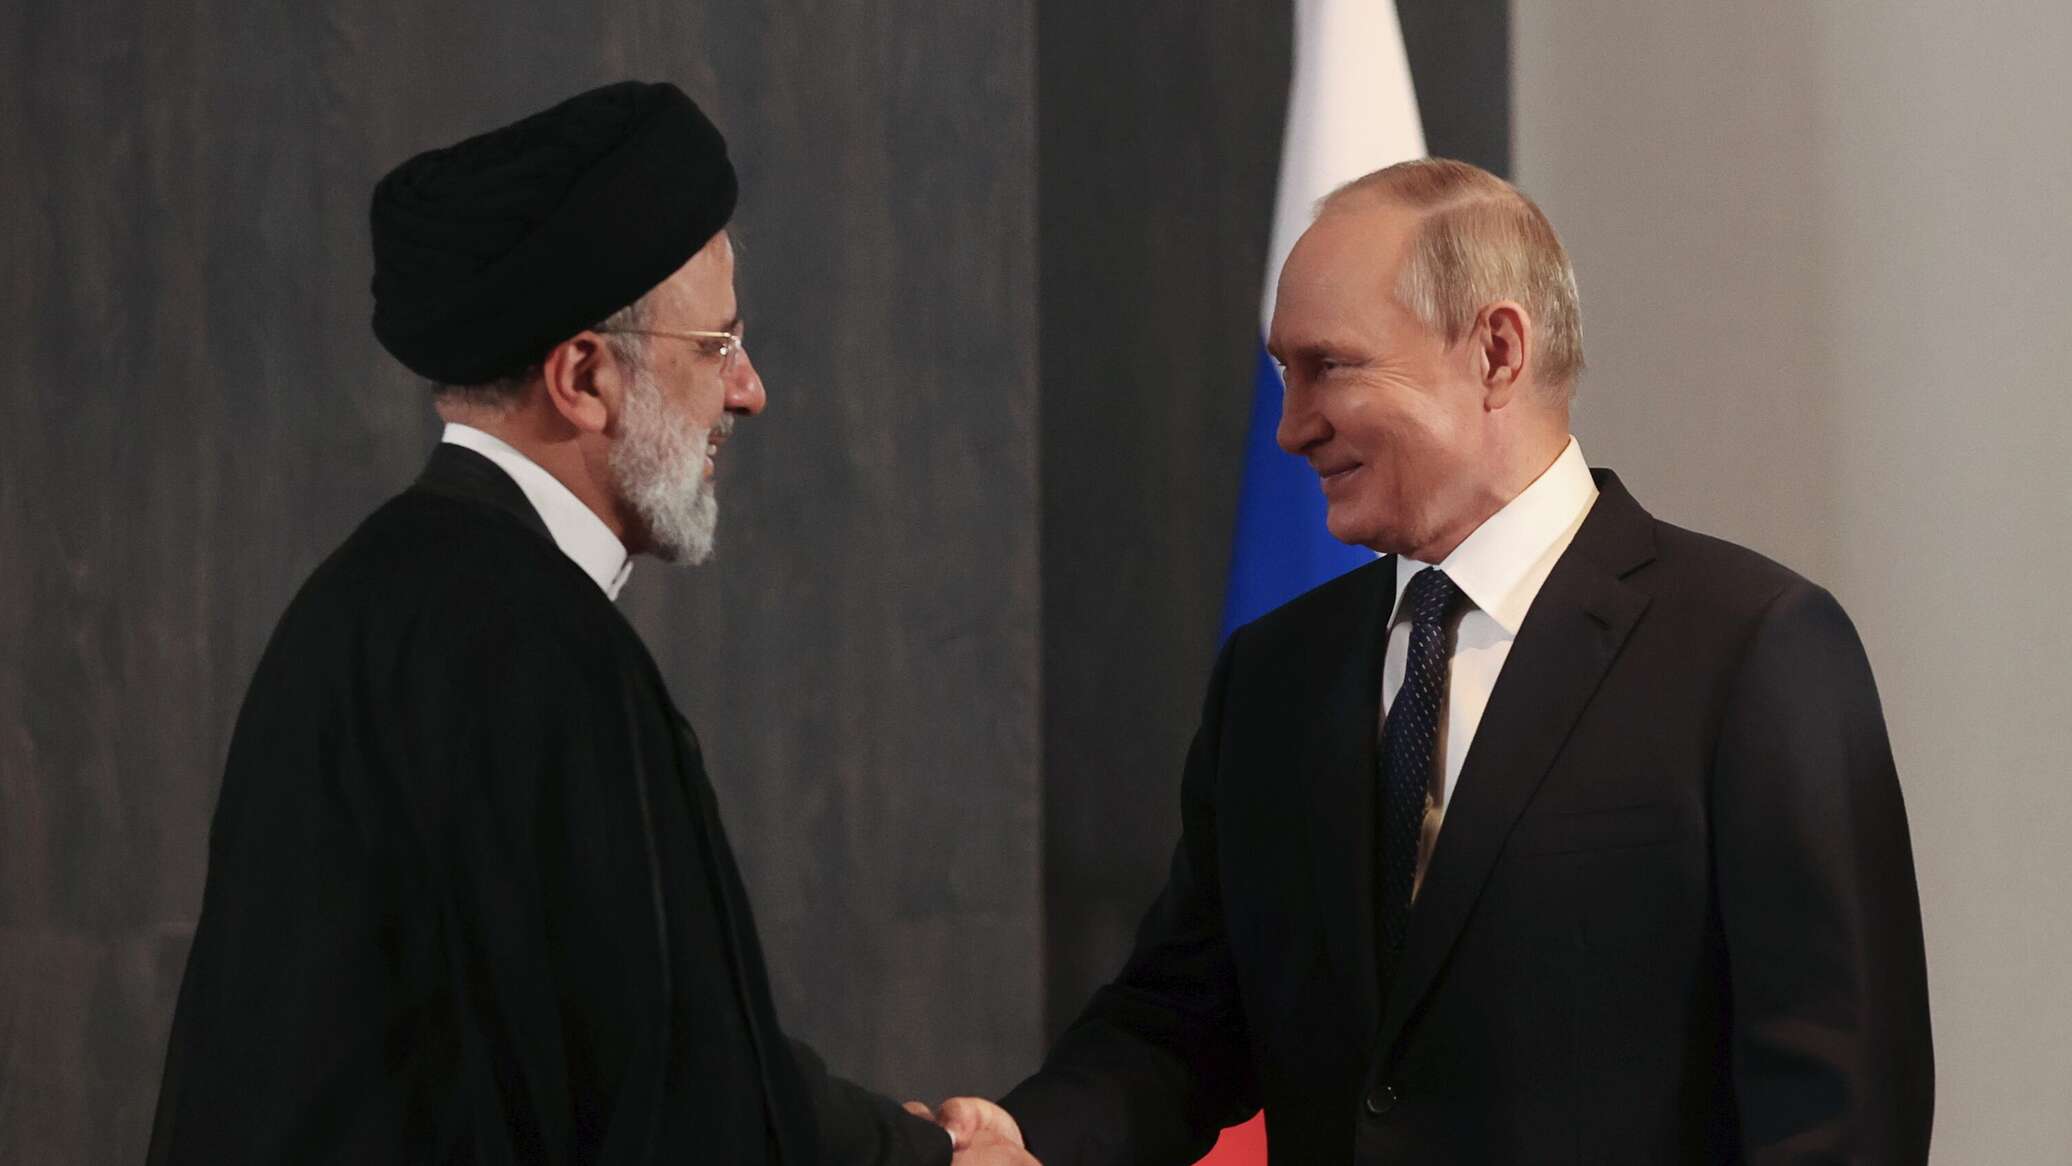 باحث في الشأن الإيراني لـ"سبوتنيك": العلاقات العسكرية بين روسيا وإيران تشهد تطورا بارزا